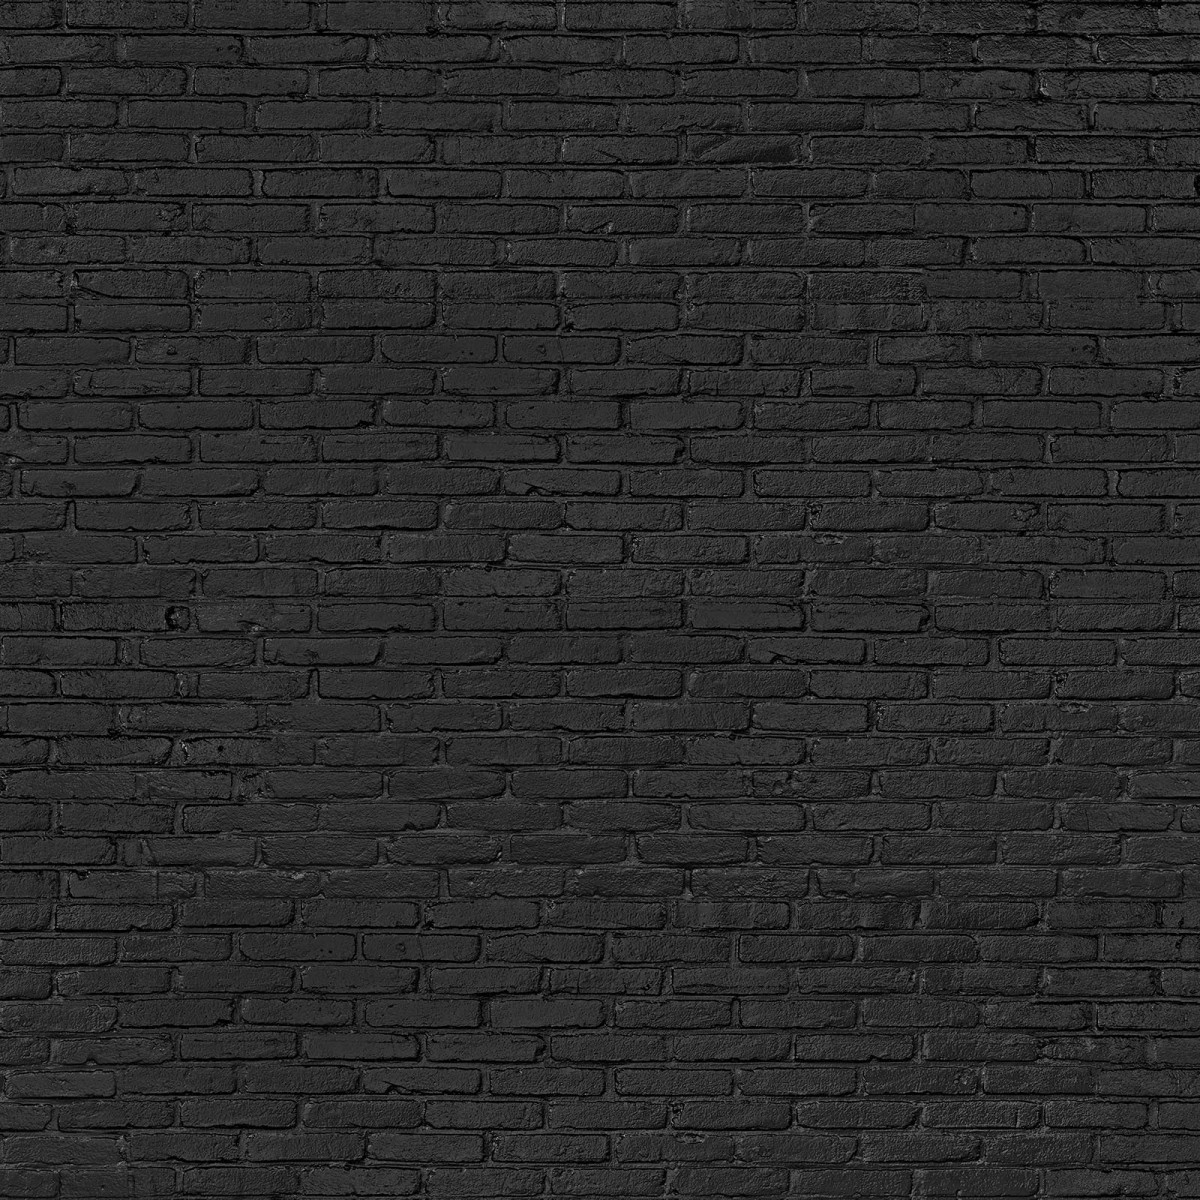 Tapet designer Materials Brick, Black by Piet Hein Eek, NLXL, 4.9mp / rola, Tapet Exclusivist 